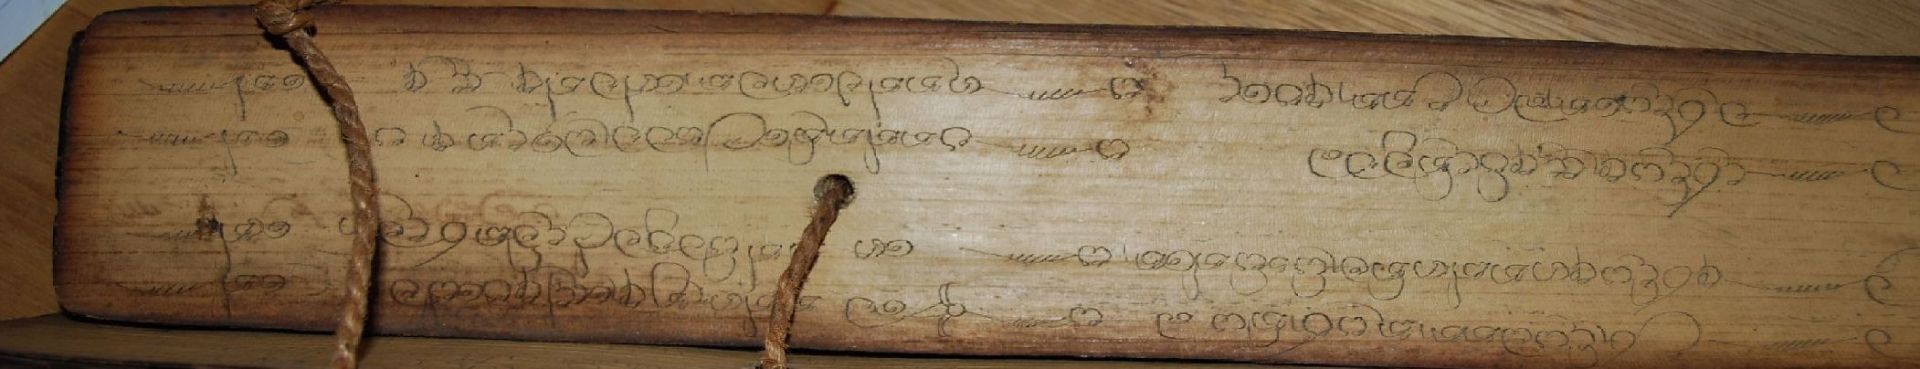 Tibetan. Gebetsbuch, Mantrasmit Bleistift geschrieben, dickes Reispapier mit Holzdeckel, älter?, - Bild 3 aus 9